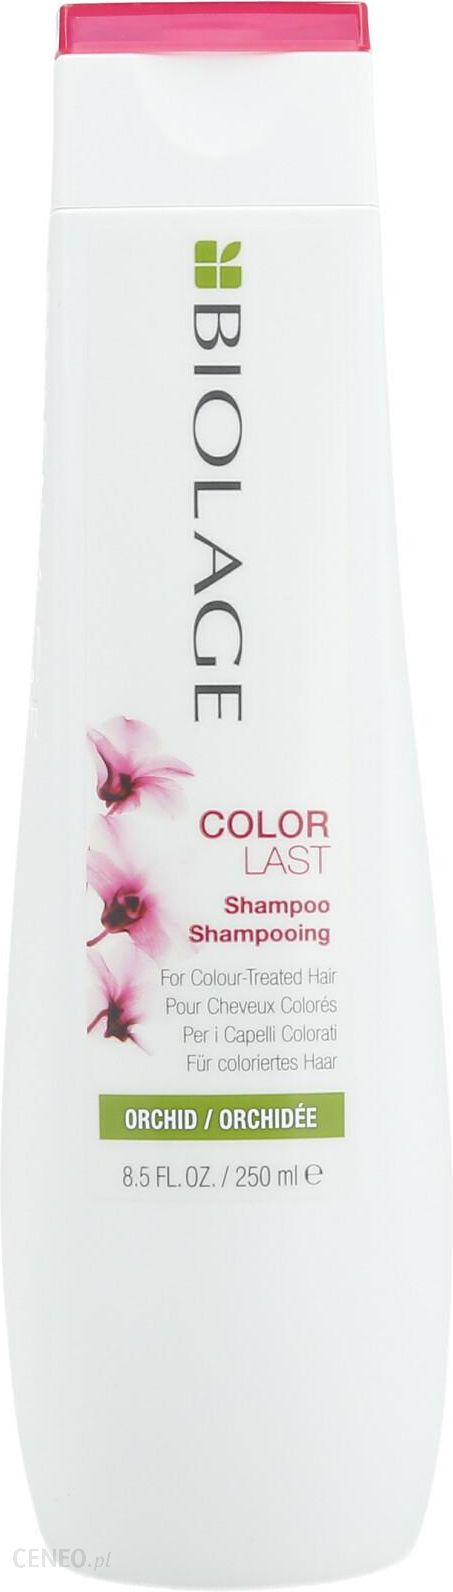 matrix biolage szampon do włosów farbowanych opinie